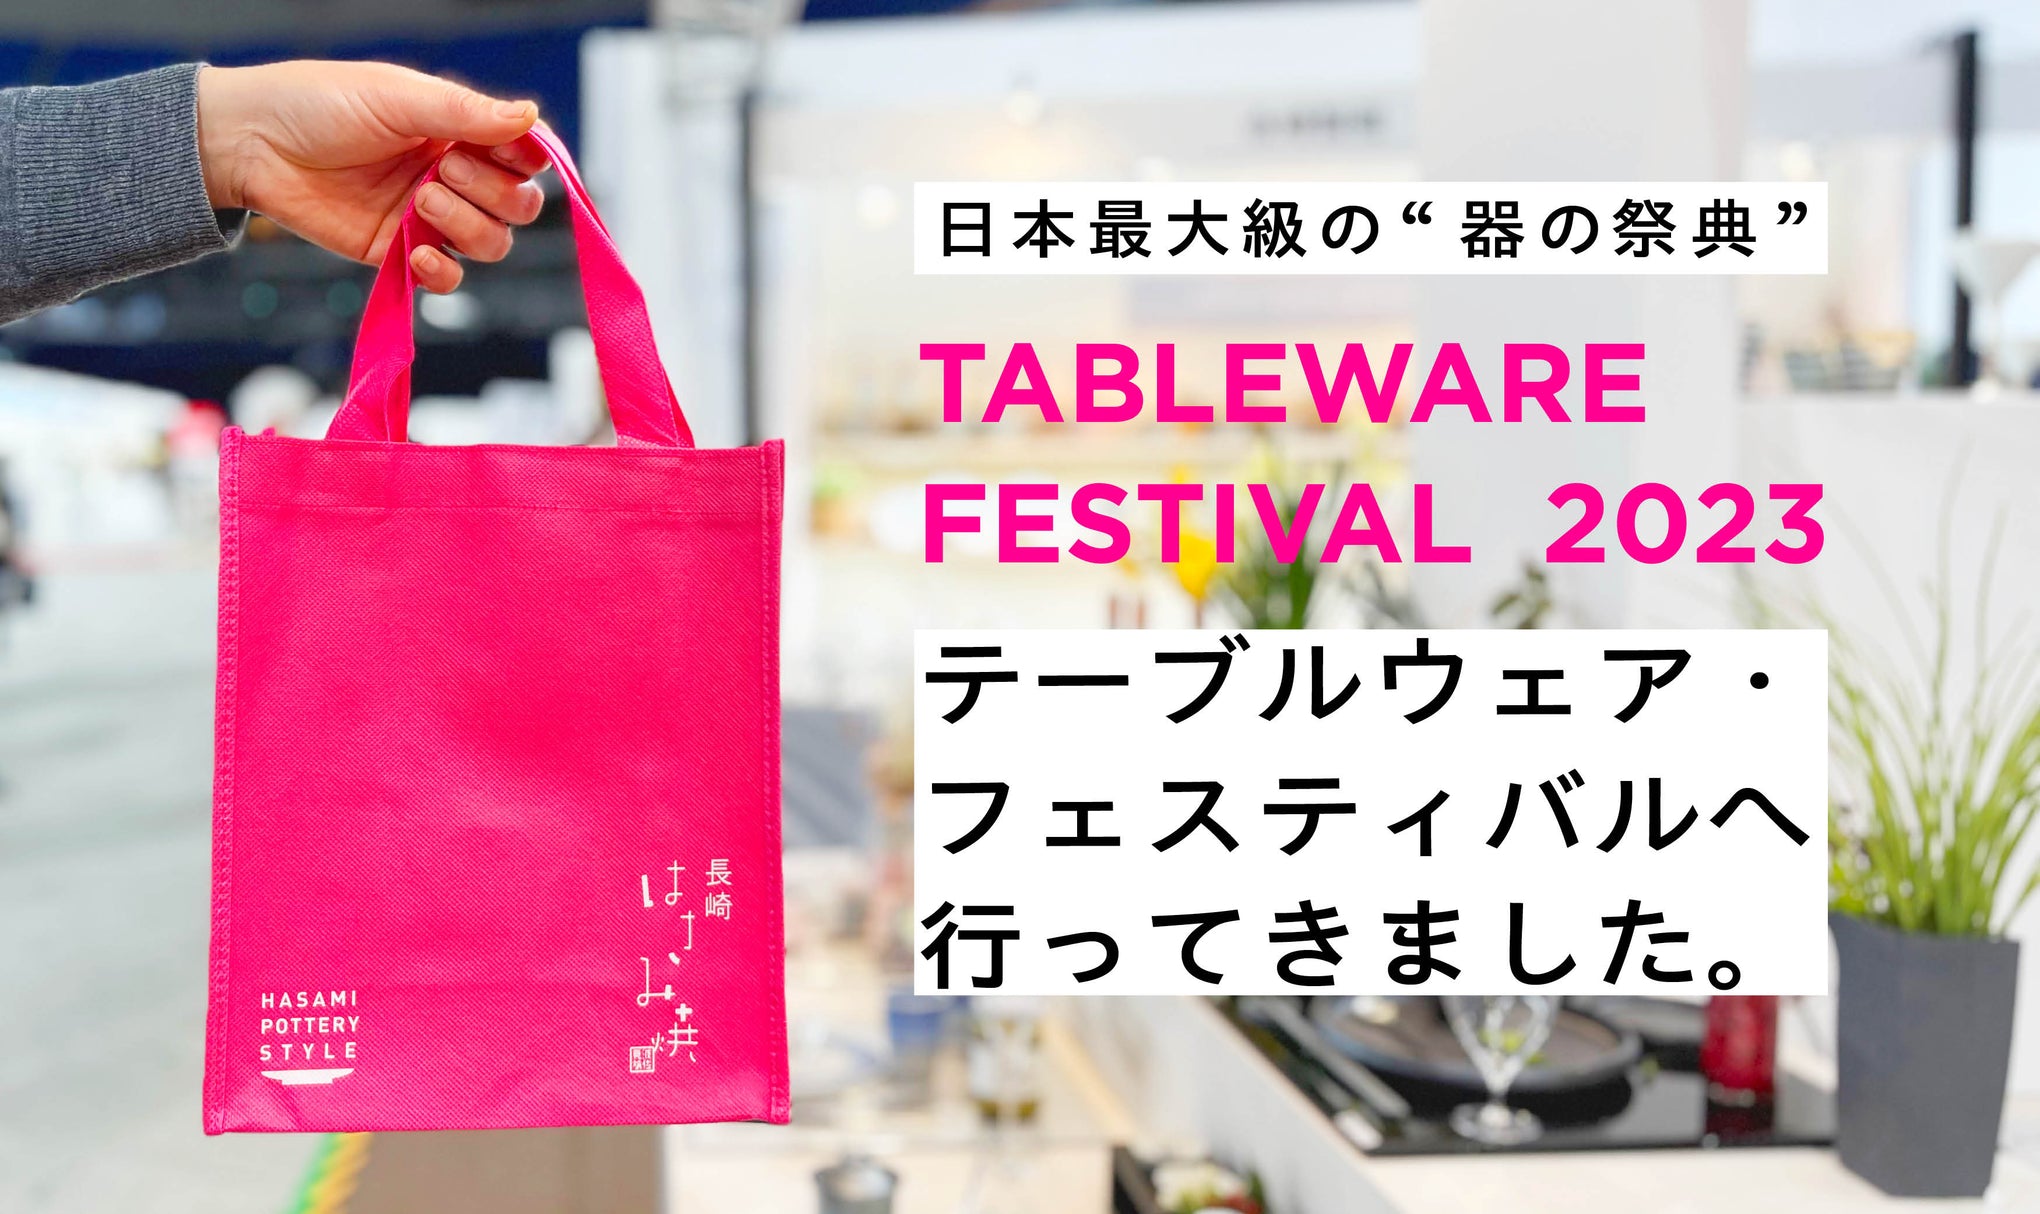 日本最大級の“器の祭典” テーブルウェア・フェスティバルへ行ってきました。